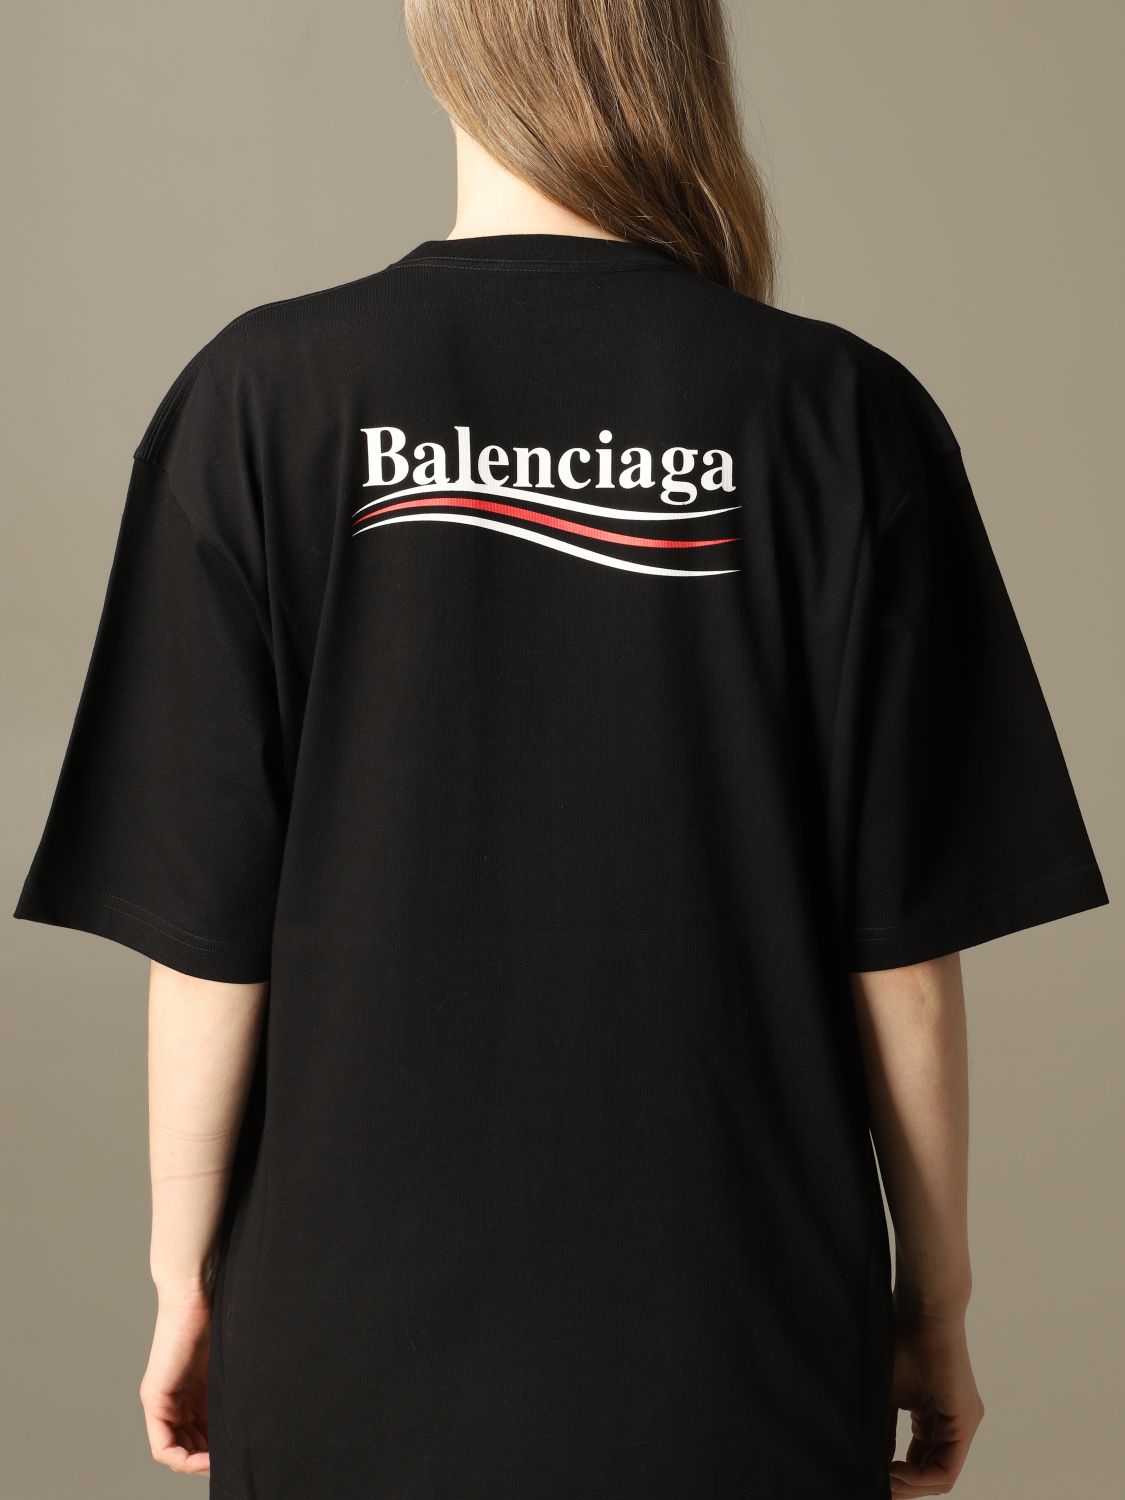 新色追加-3/19より バレンシアガ BALENCIAGA メンズ Tシャツ 半袖Tシャツ 衣料品 トップ•ス コットン メンズ ブラック系